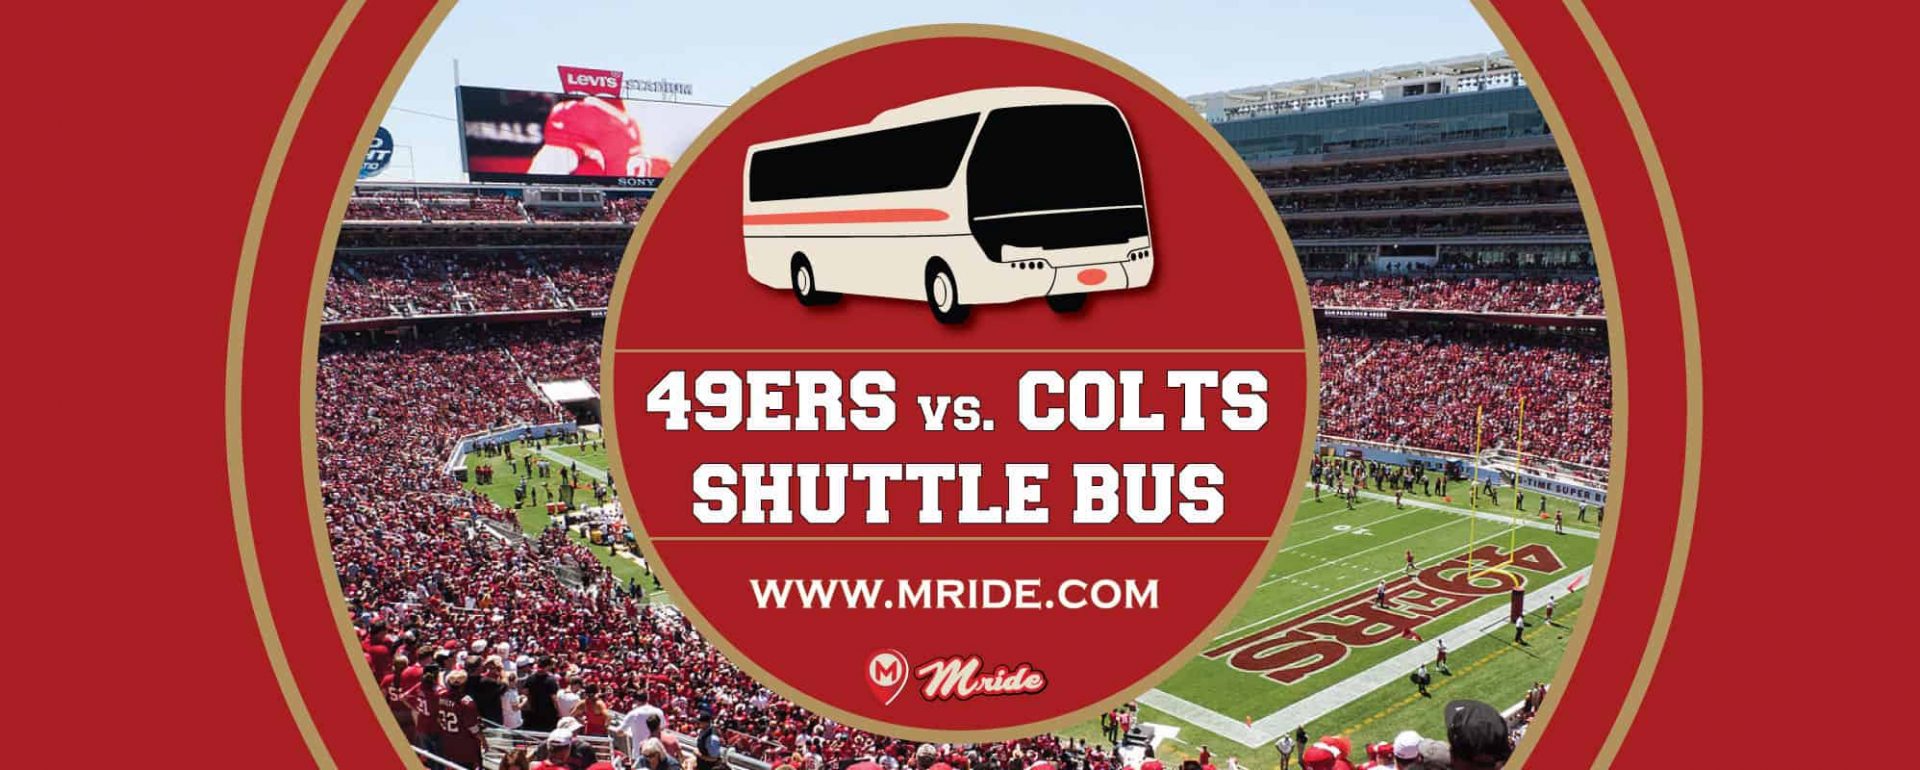 49ers vs. Colts Shuttle Bus